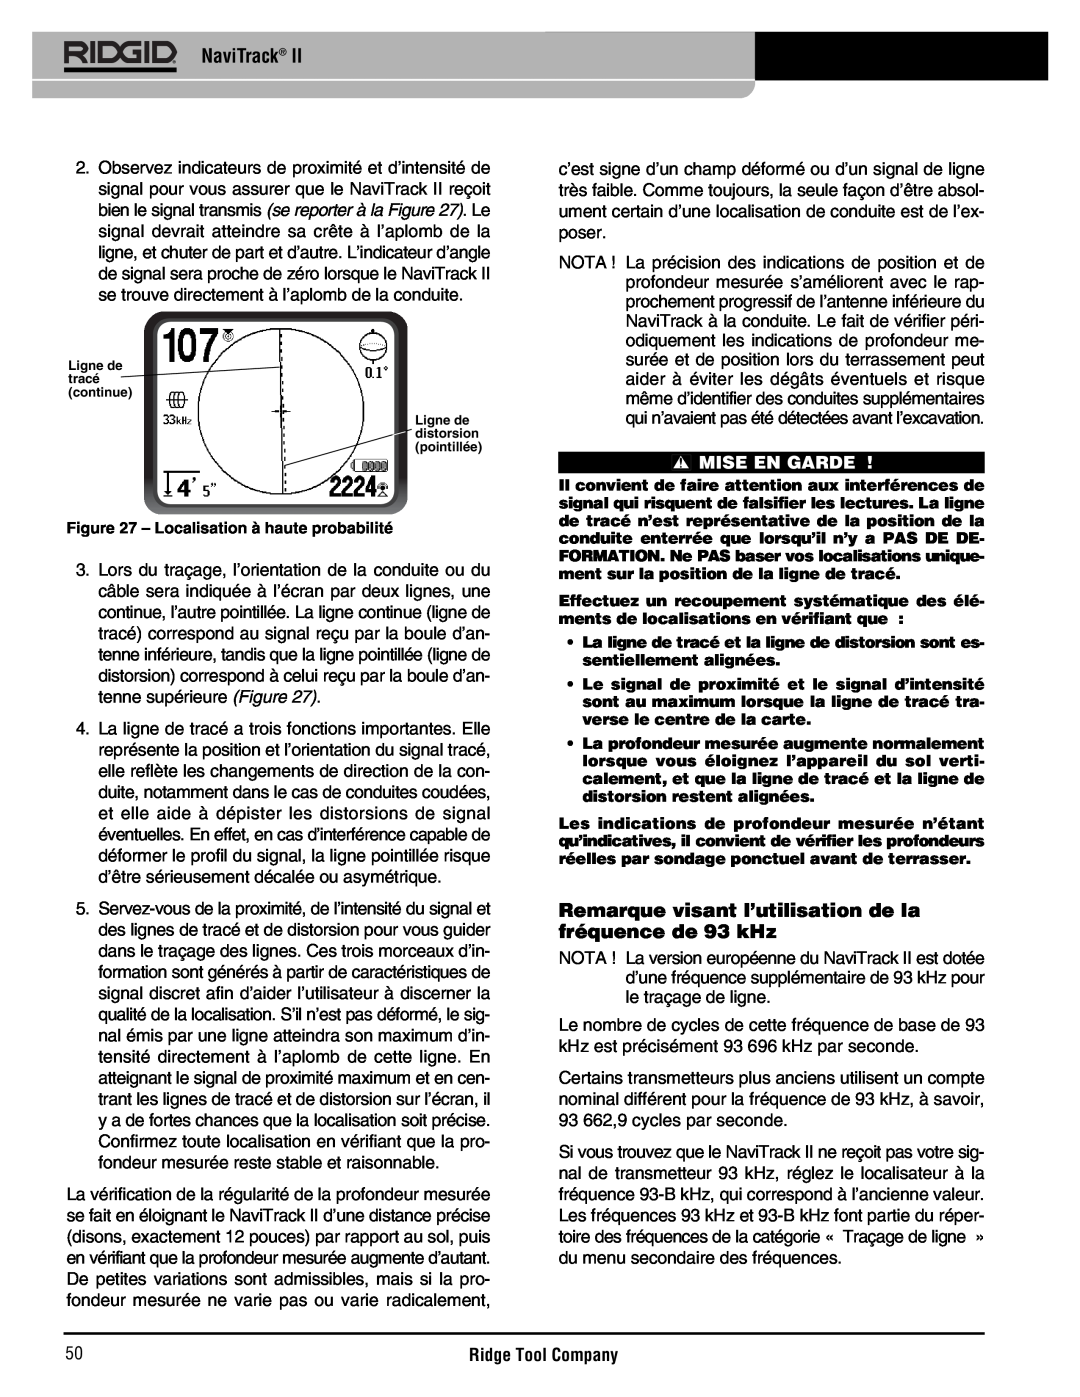 RIDGID Metal Detector manual Remarque visant l’utilisation de la fréquence de 93 kHz, NaviTrack, Mise En Garde 